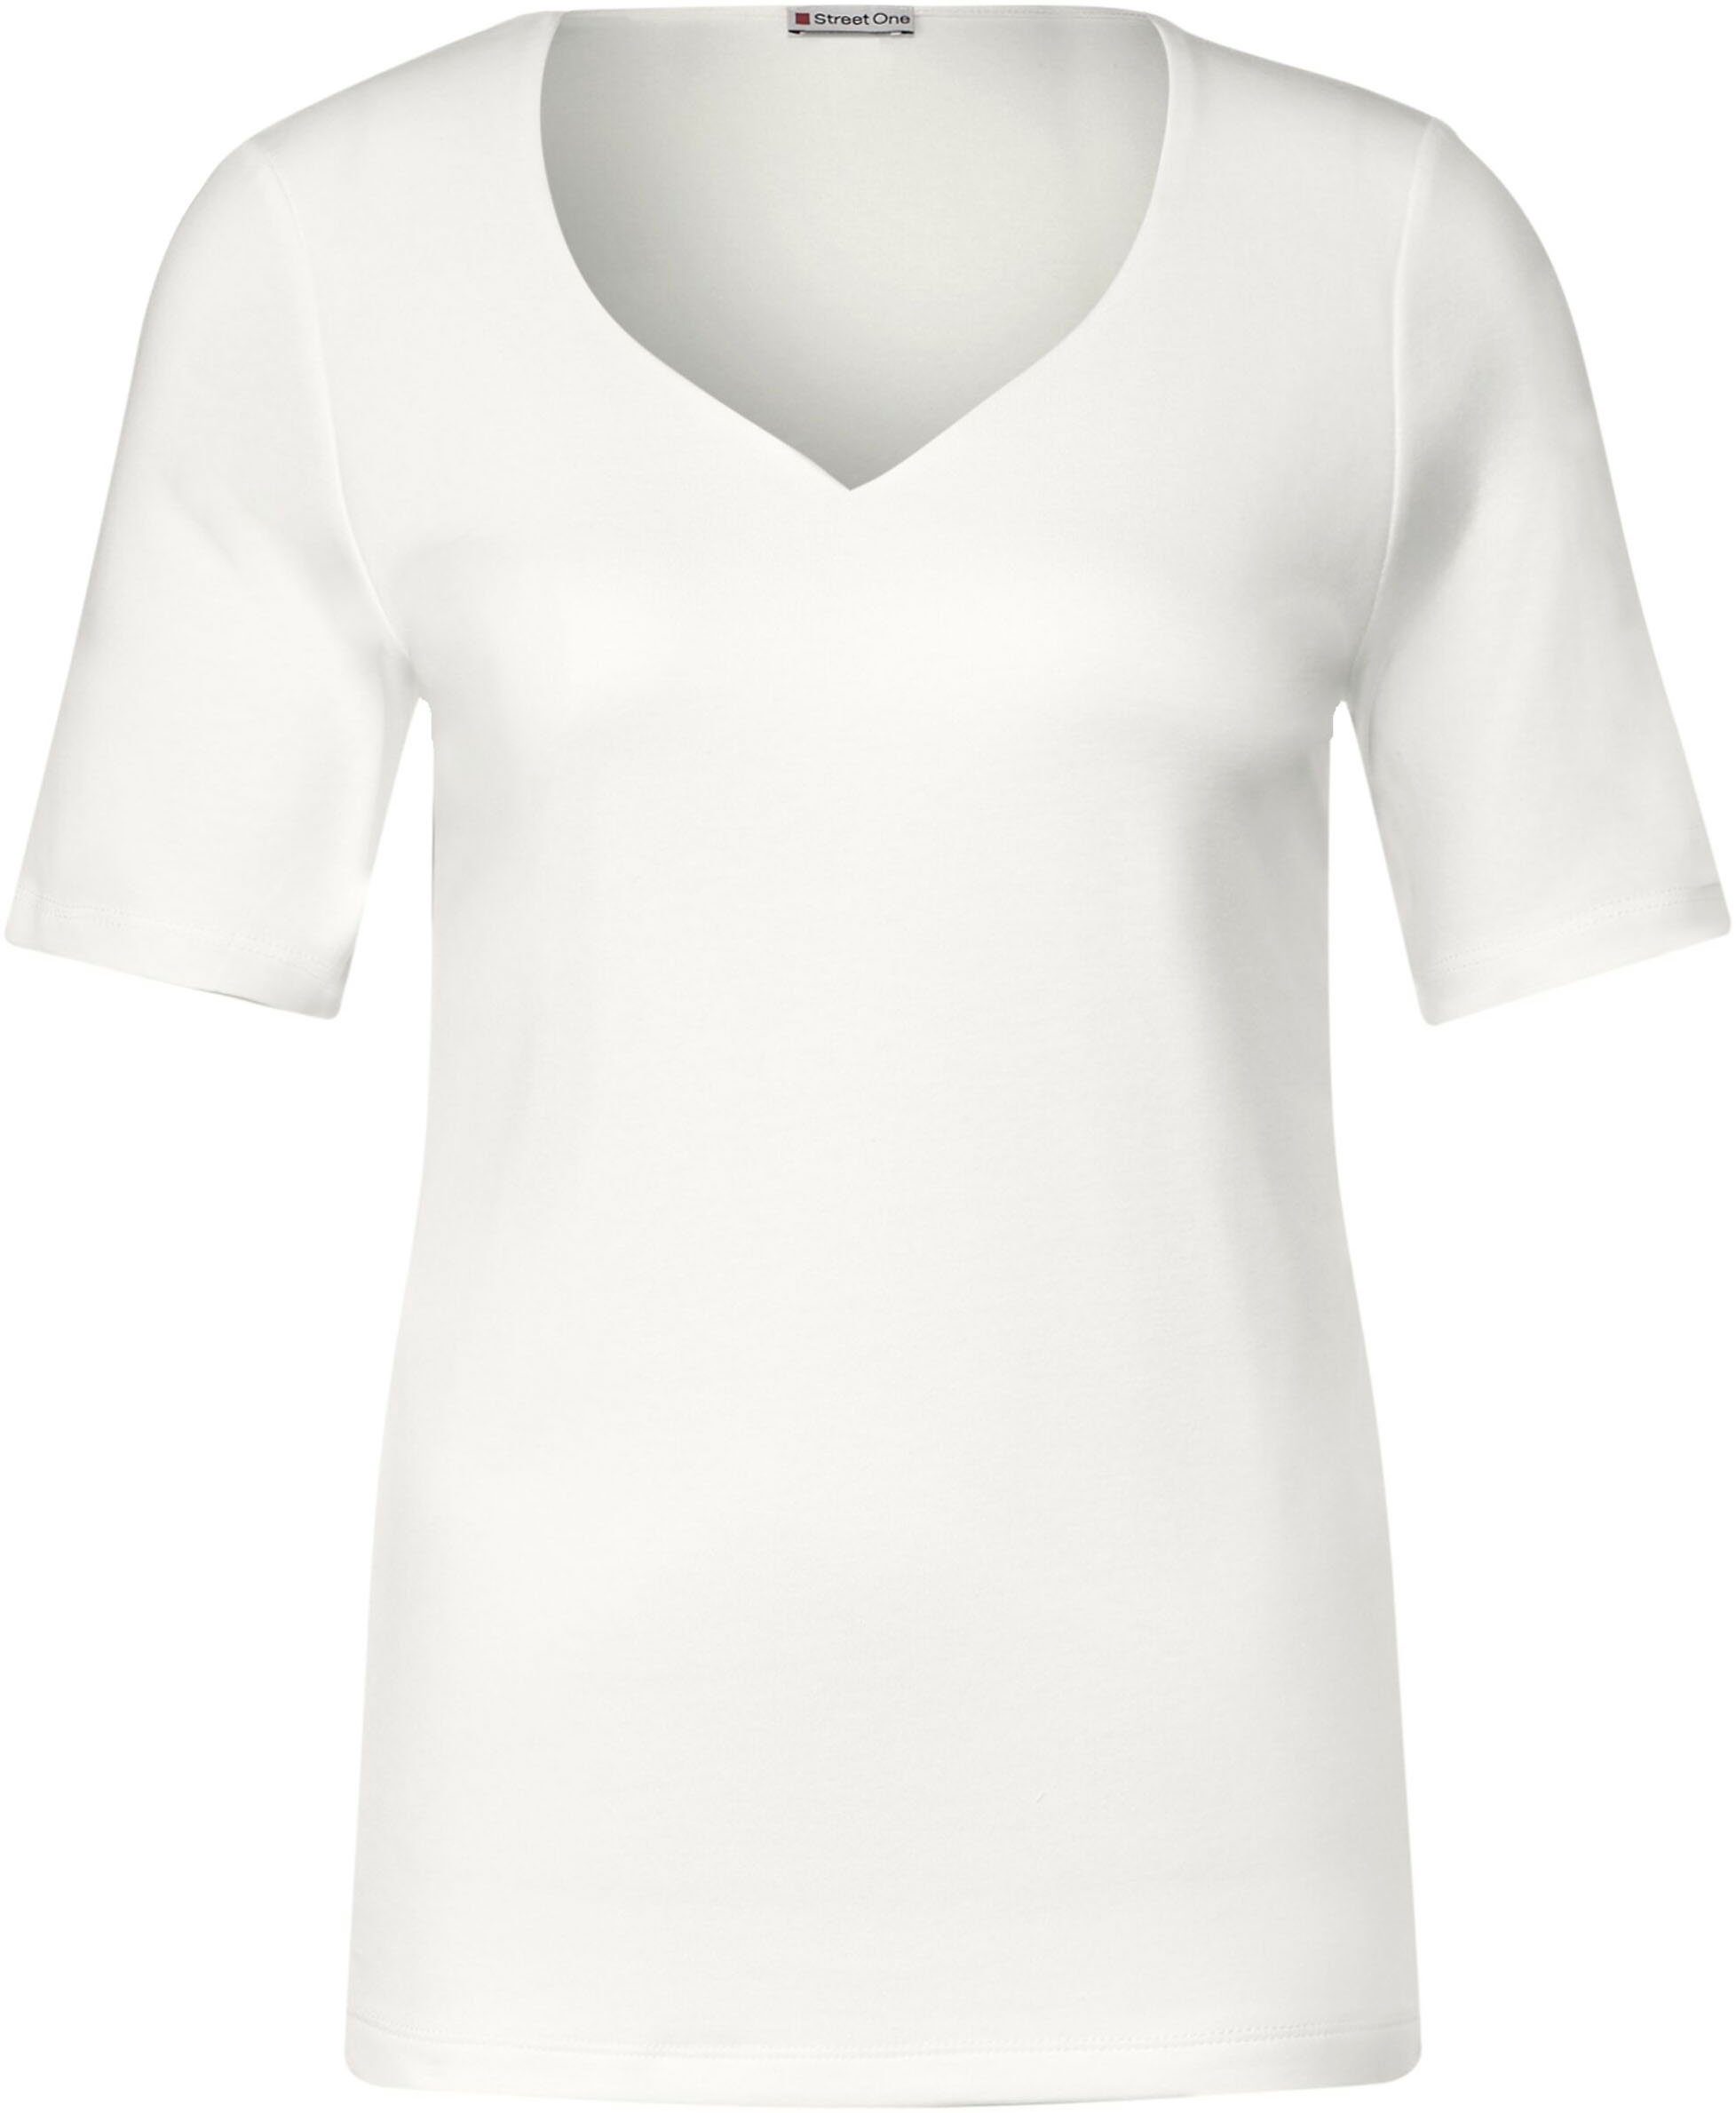 Veranstaltung STREET ONE T-Shirt mit Herz-Ausschnitt white off